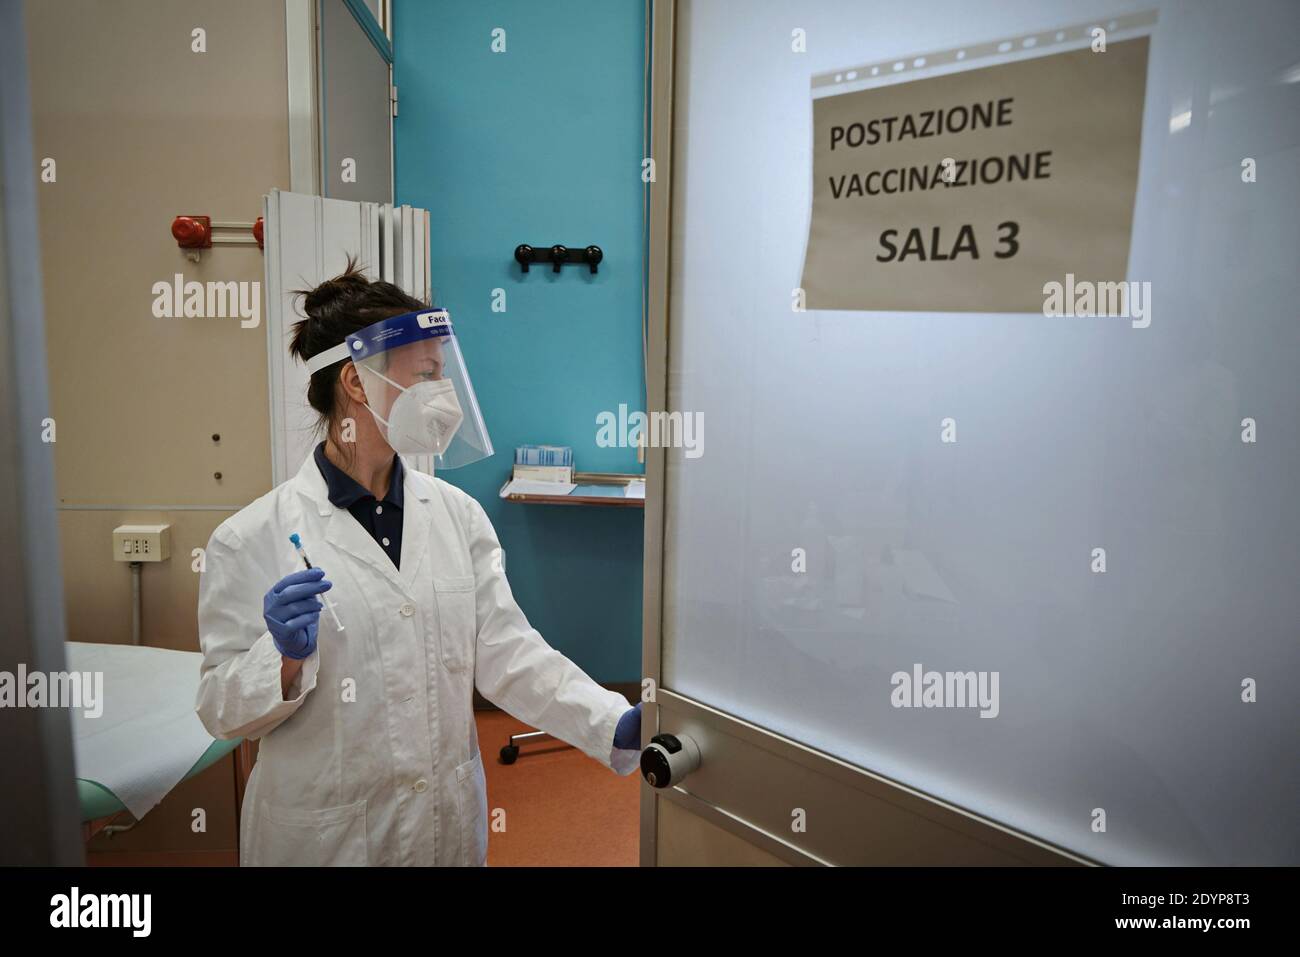 Gesundheitshelfer am ersten Tag der Impfkampagne gegen COVID 19 im Krankenhaus Amedeo di Savoia. Turin, Italien - Dezember 27, Stockfoto